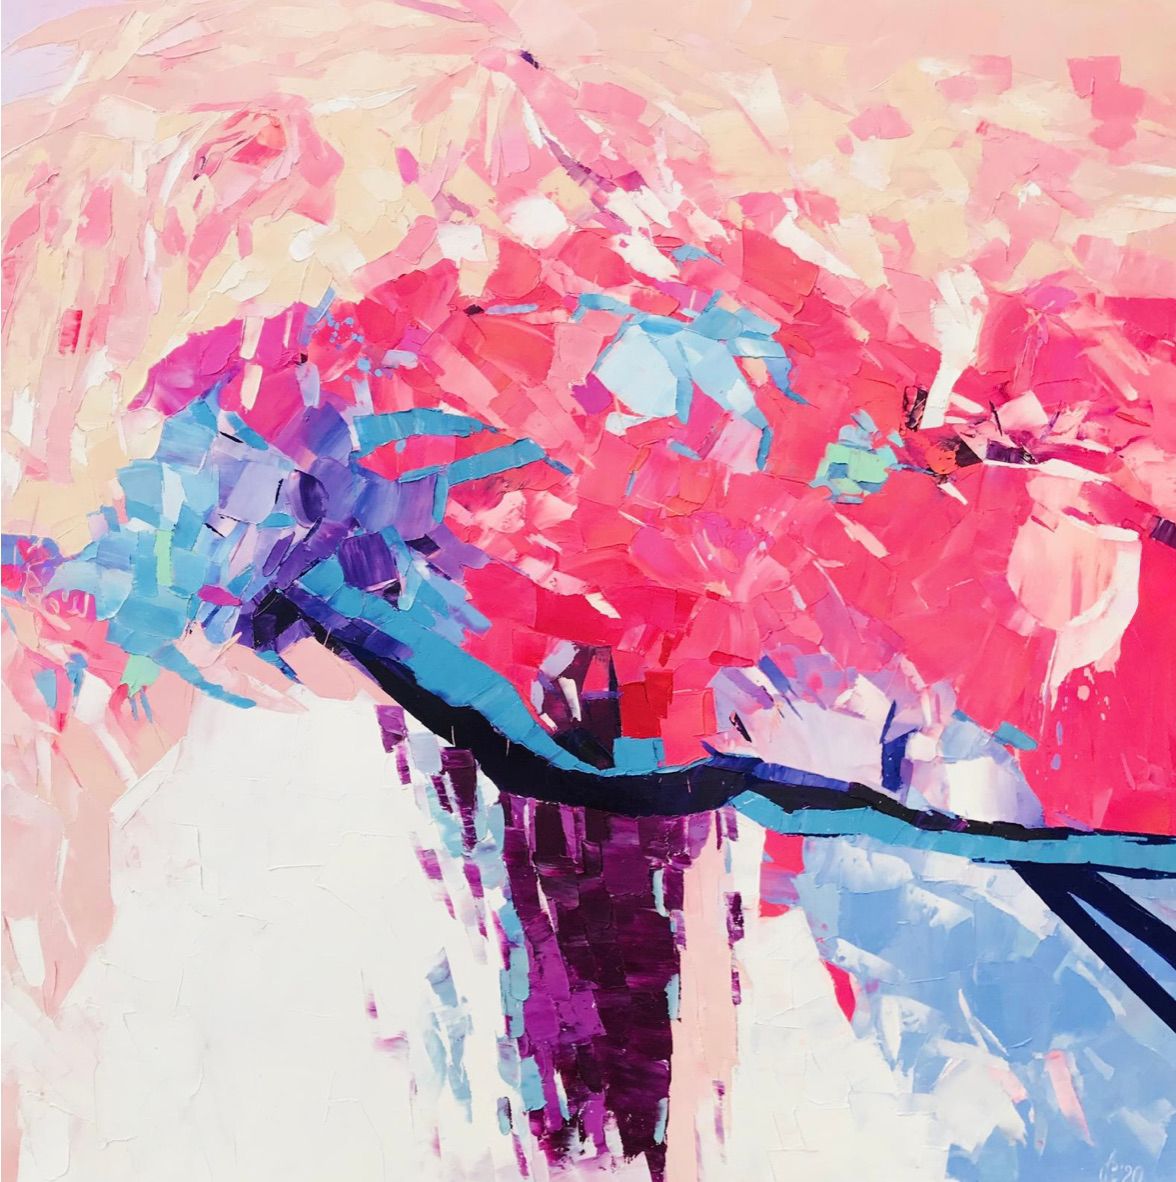 Svitlana Andriichenko ist eine Ukraine/Deutsche Malerei-Künstlerin. "Road to Pink Mountains" ist ein abstraktes buntes Blumenbild.